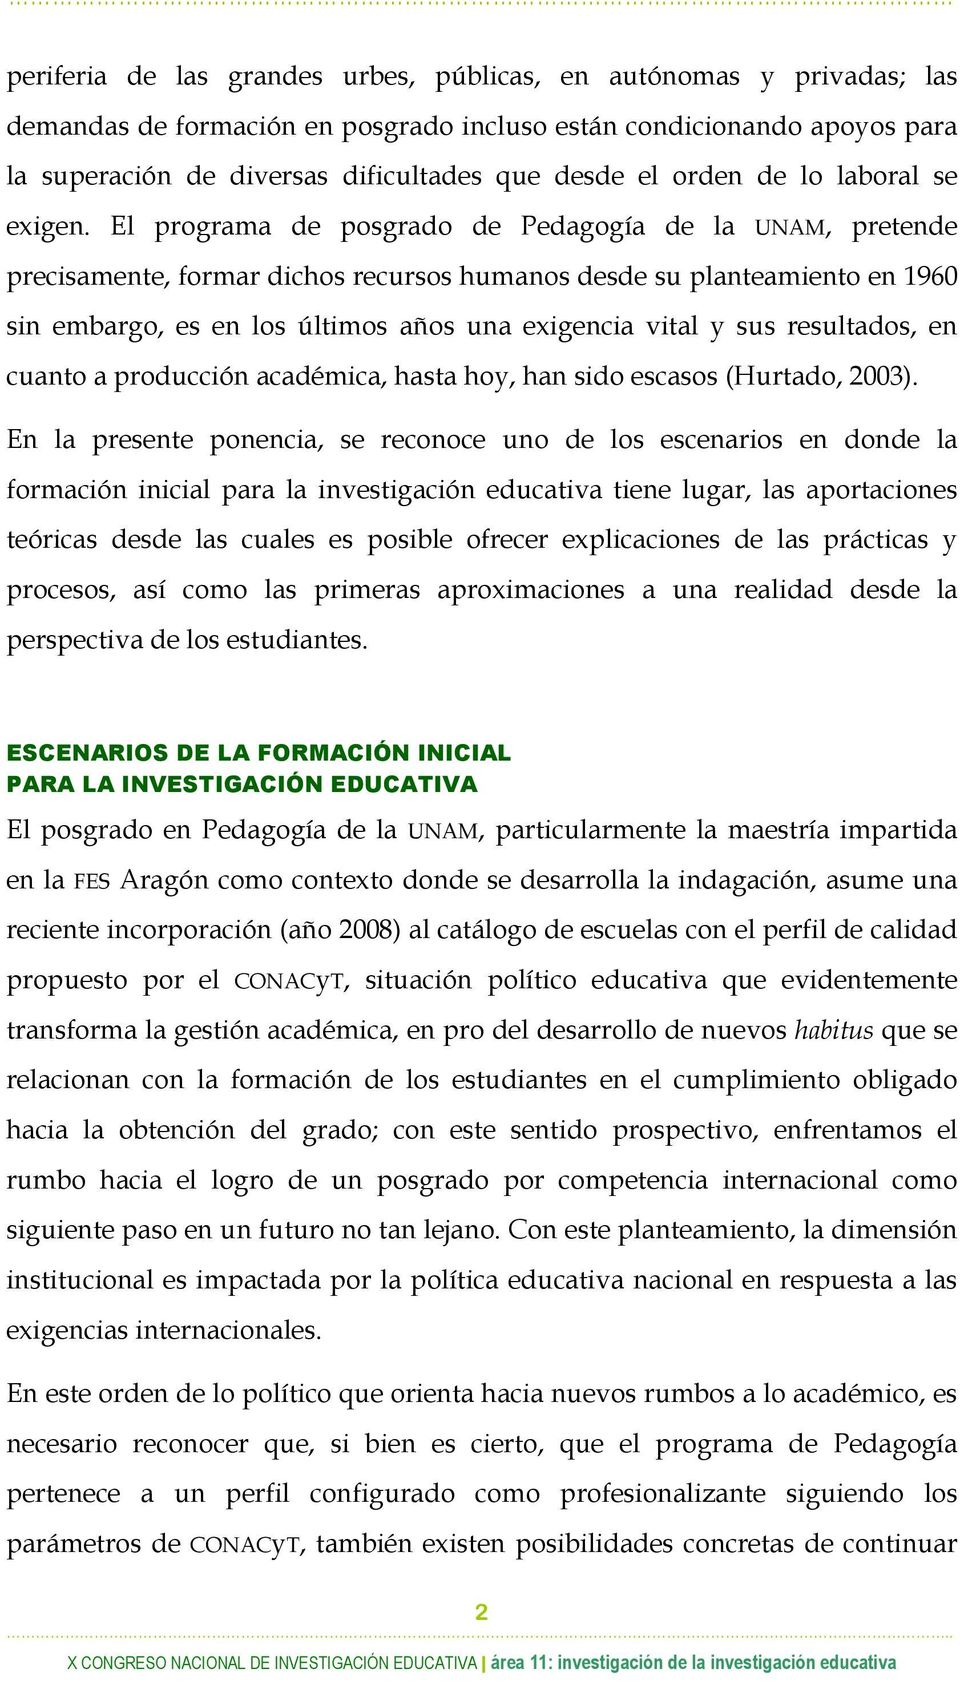 El programa de posgrado de Pedagogía de la UNAM, pretende precisamente, formar dichos recursos humanos desde su planteamiento en 1960 sin embargo, es en los últimos años una exigencia vital y sus